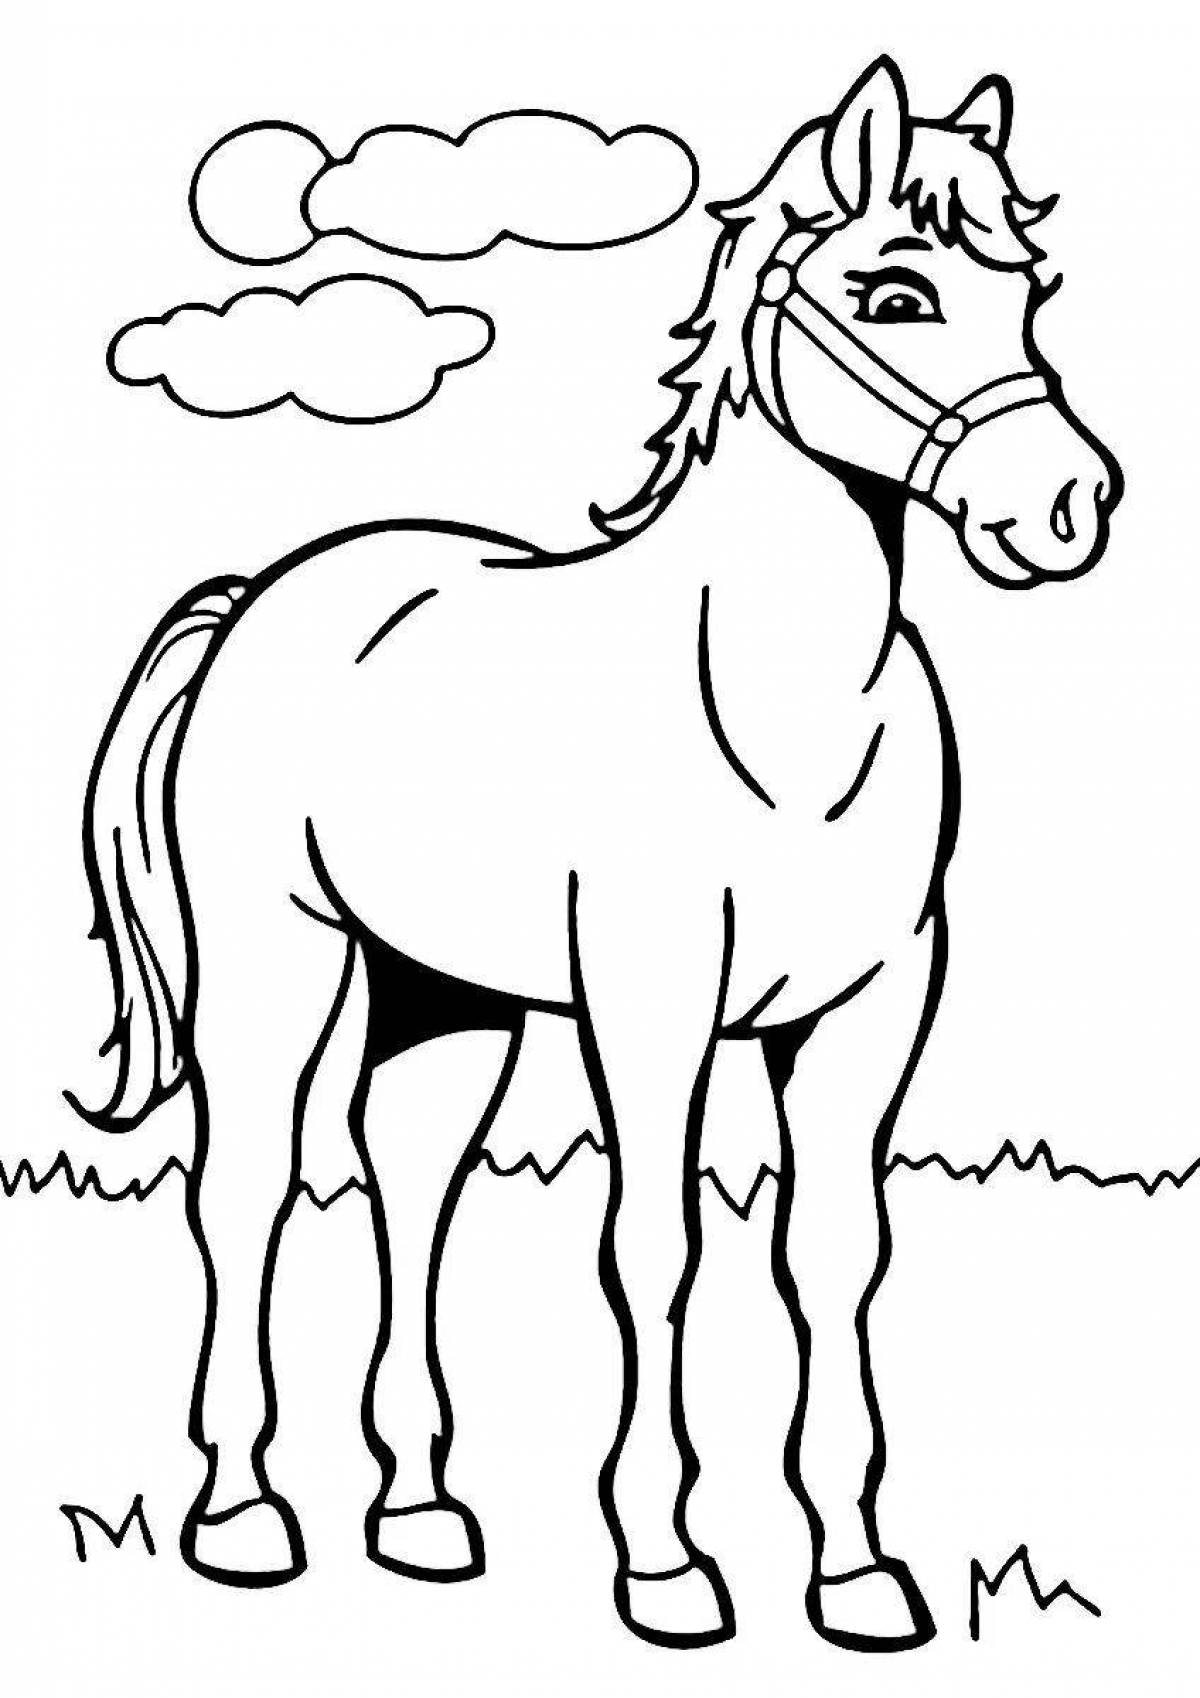 Величественная лошадь-раскраска для детей